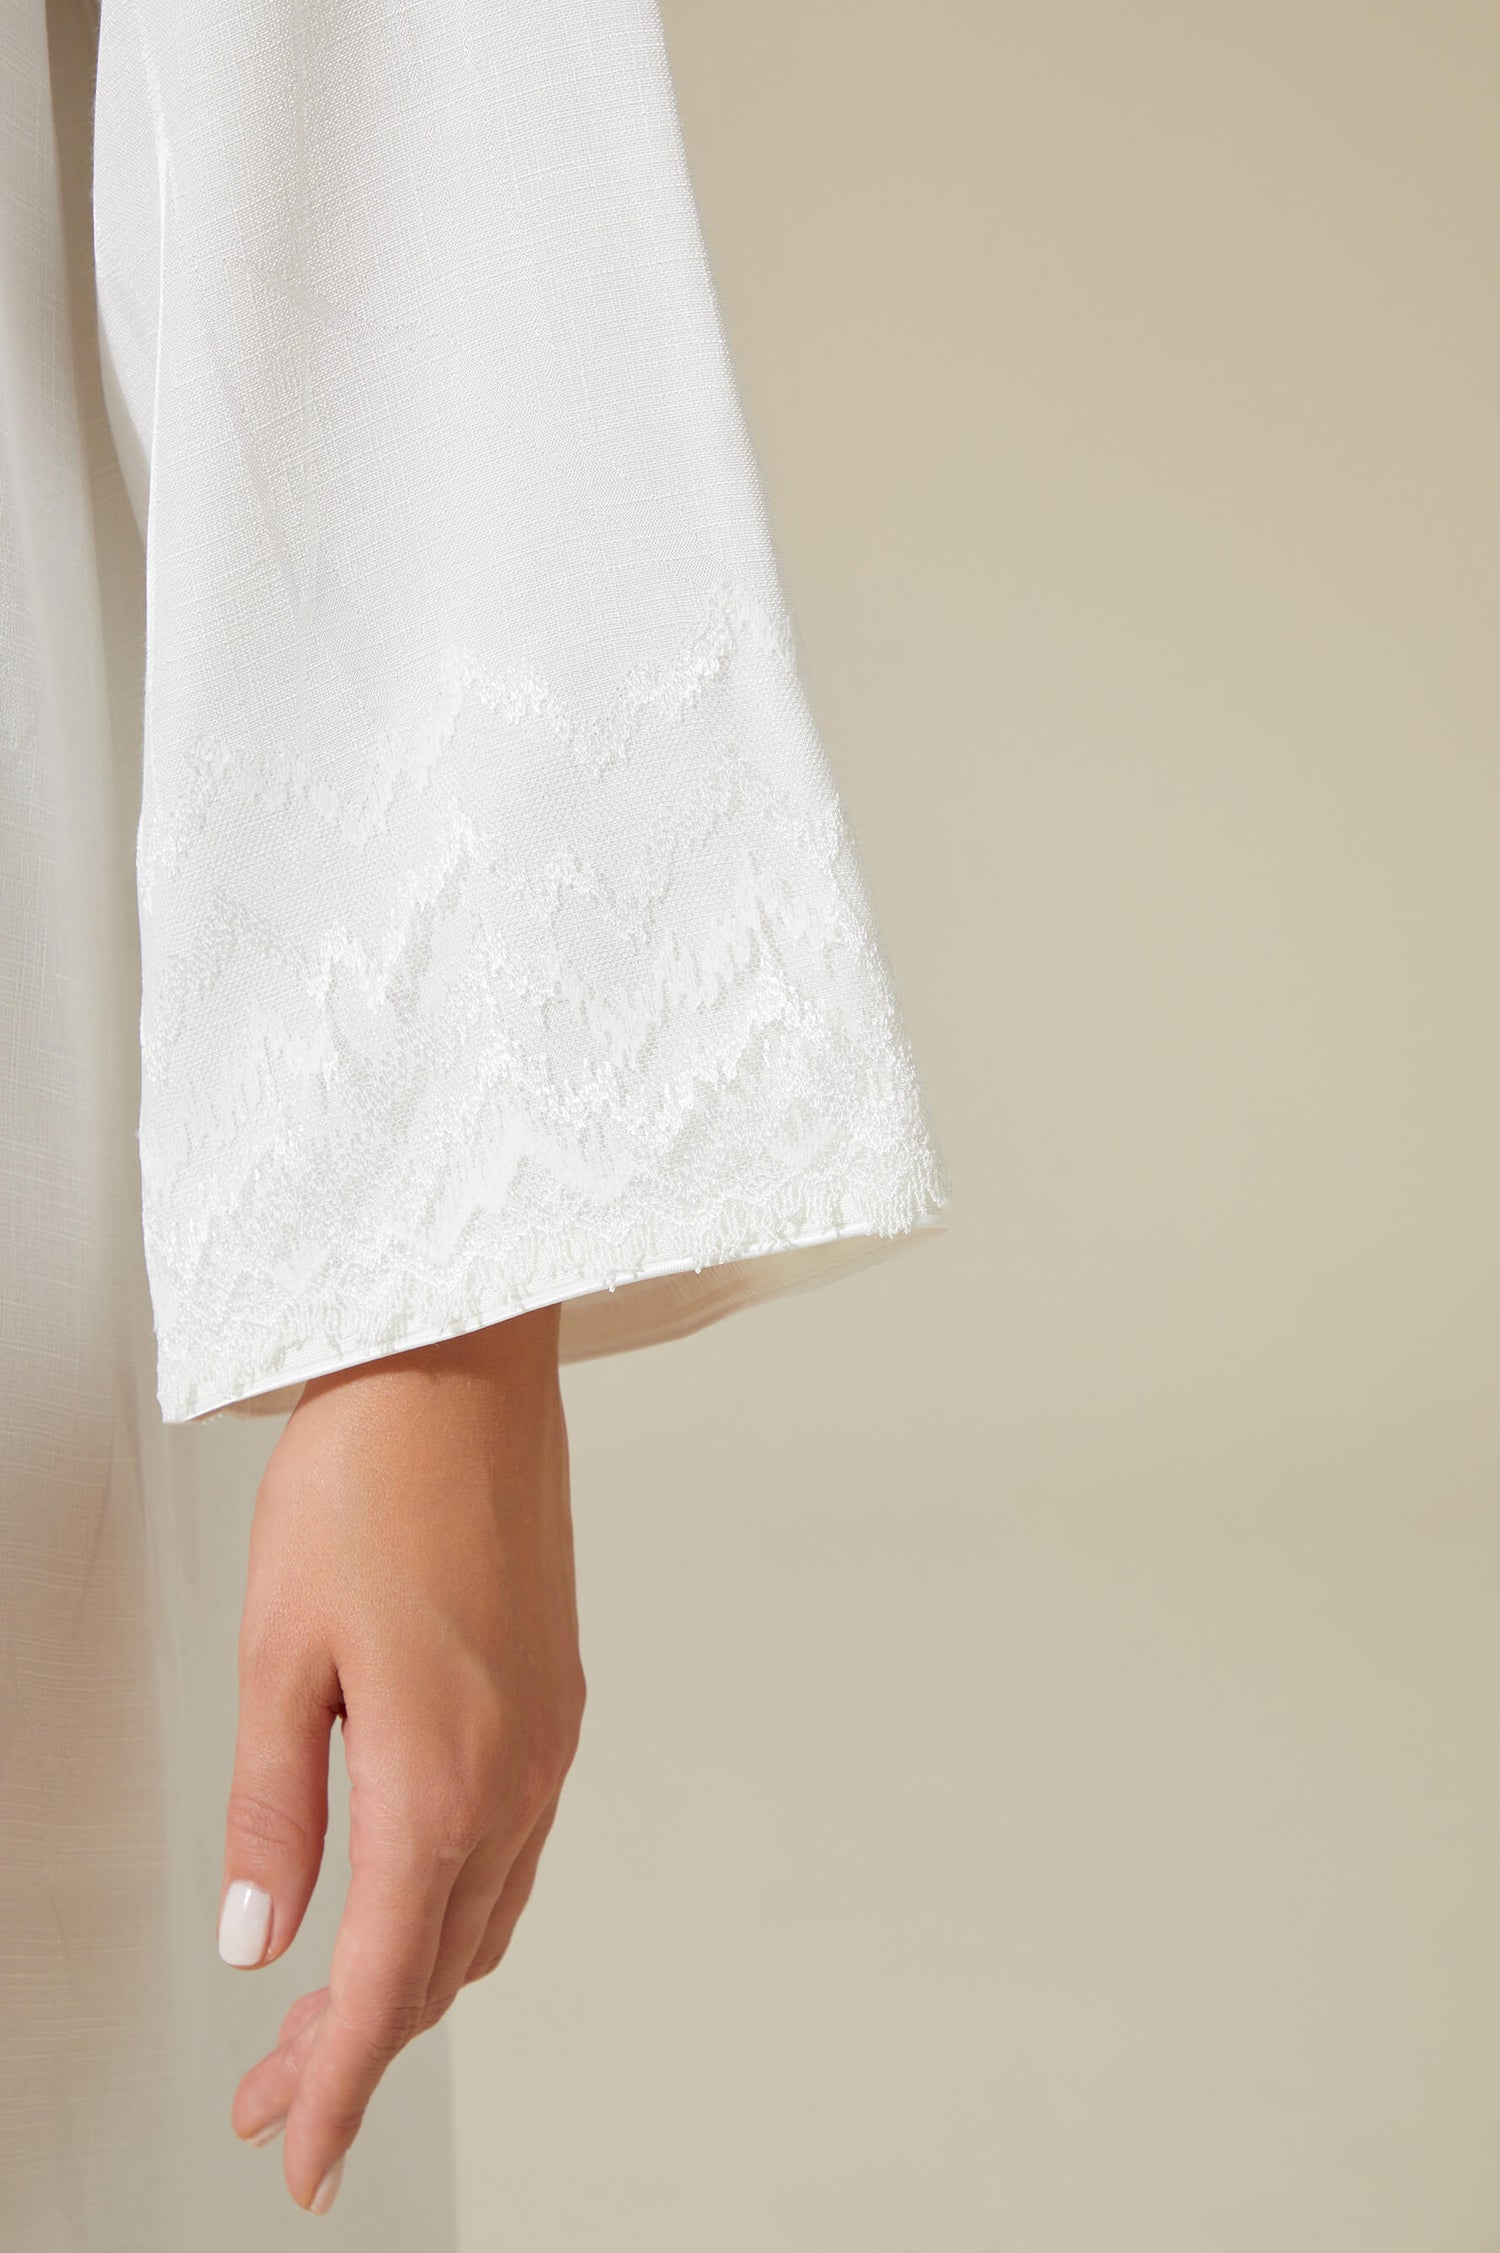 Eira - Linen Long Zippered Dress - Off White